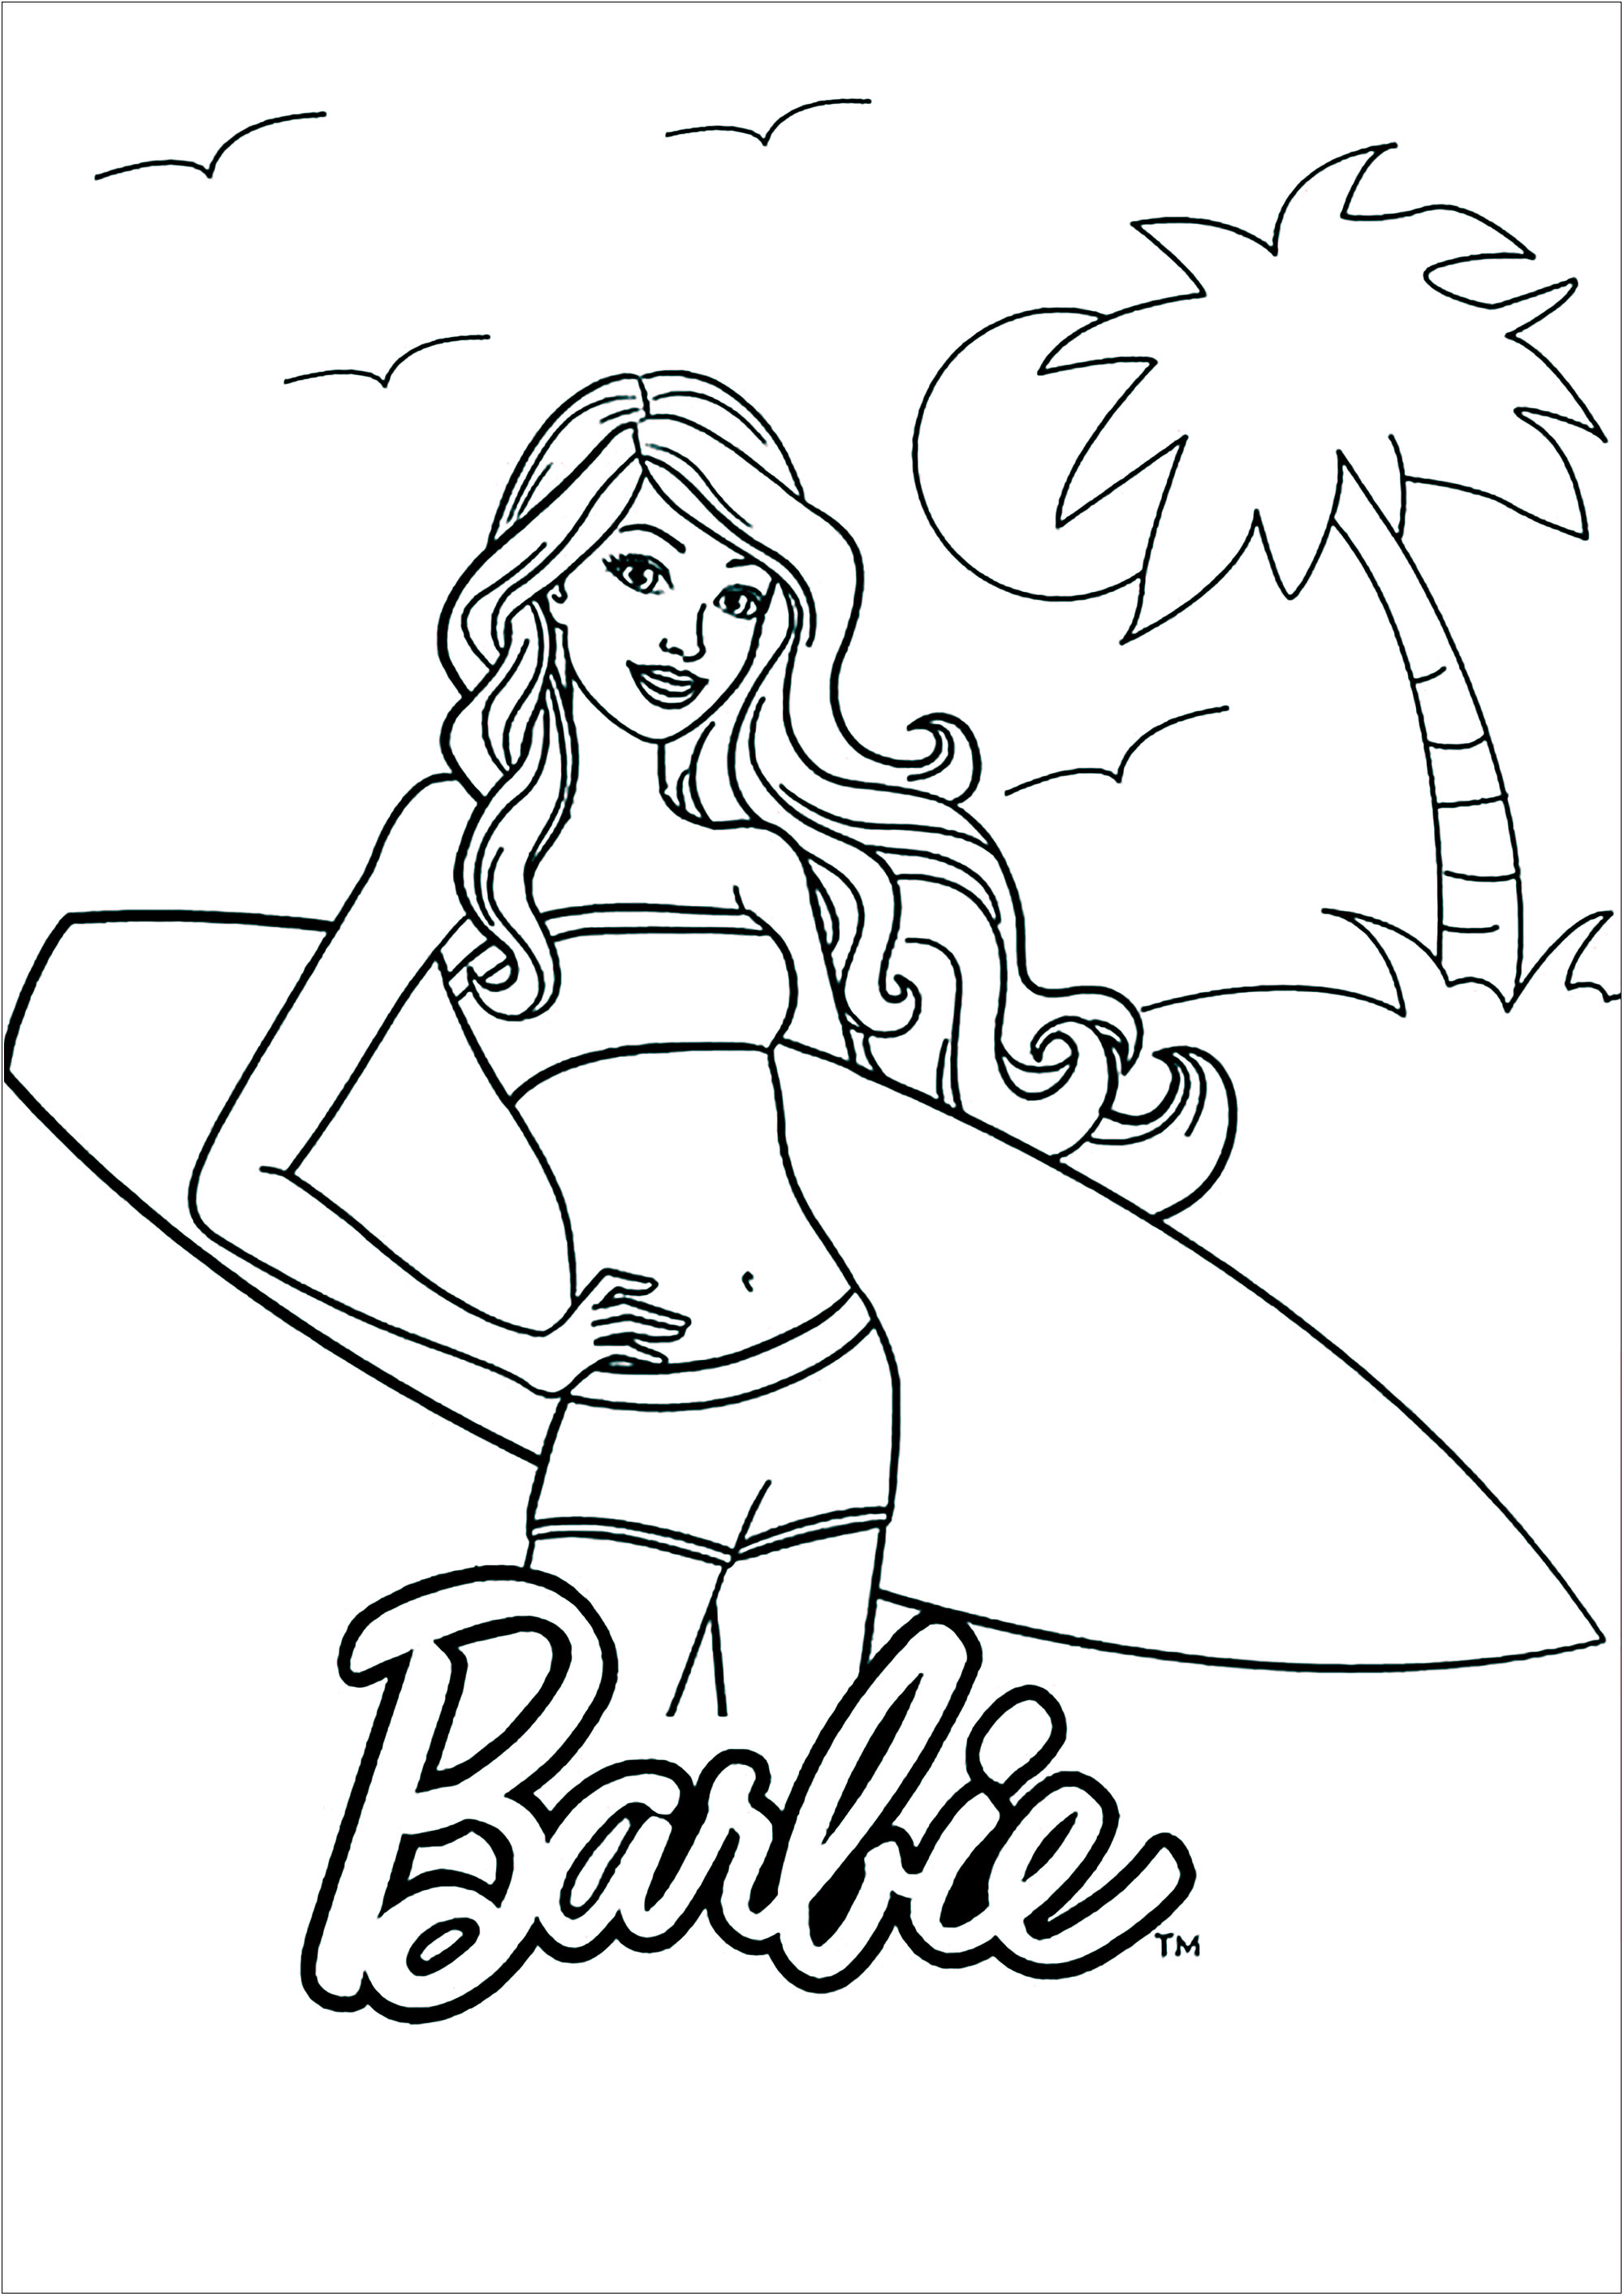 Barbie lista para surfear en una hermosa playa. Coloreado sencillo con pocos detalles